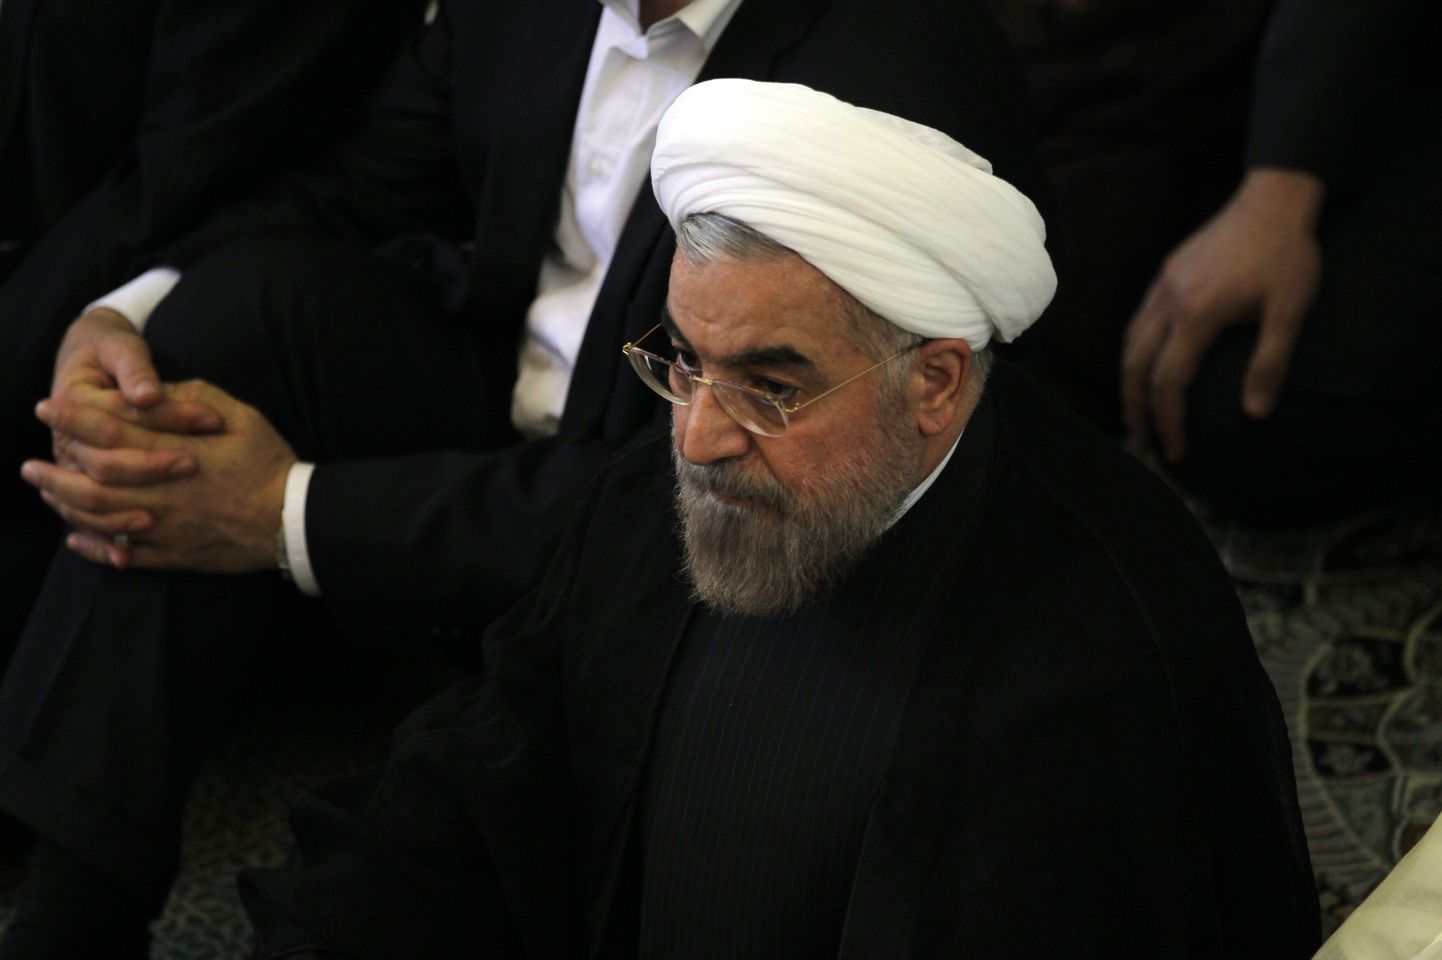 Iraani president Hassan Rowhani